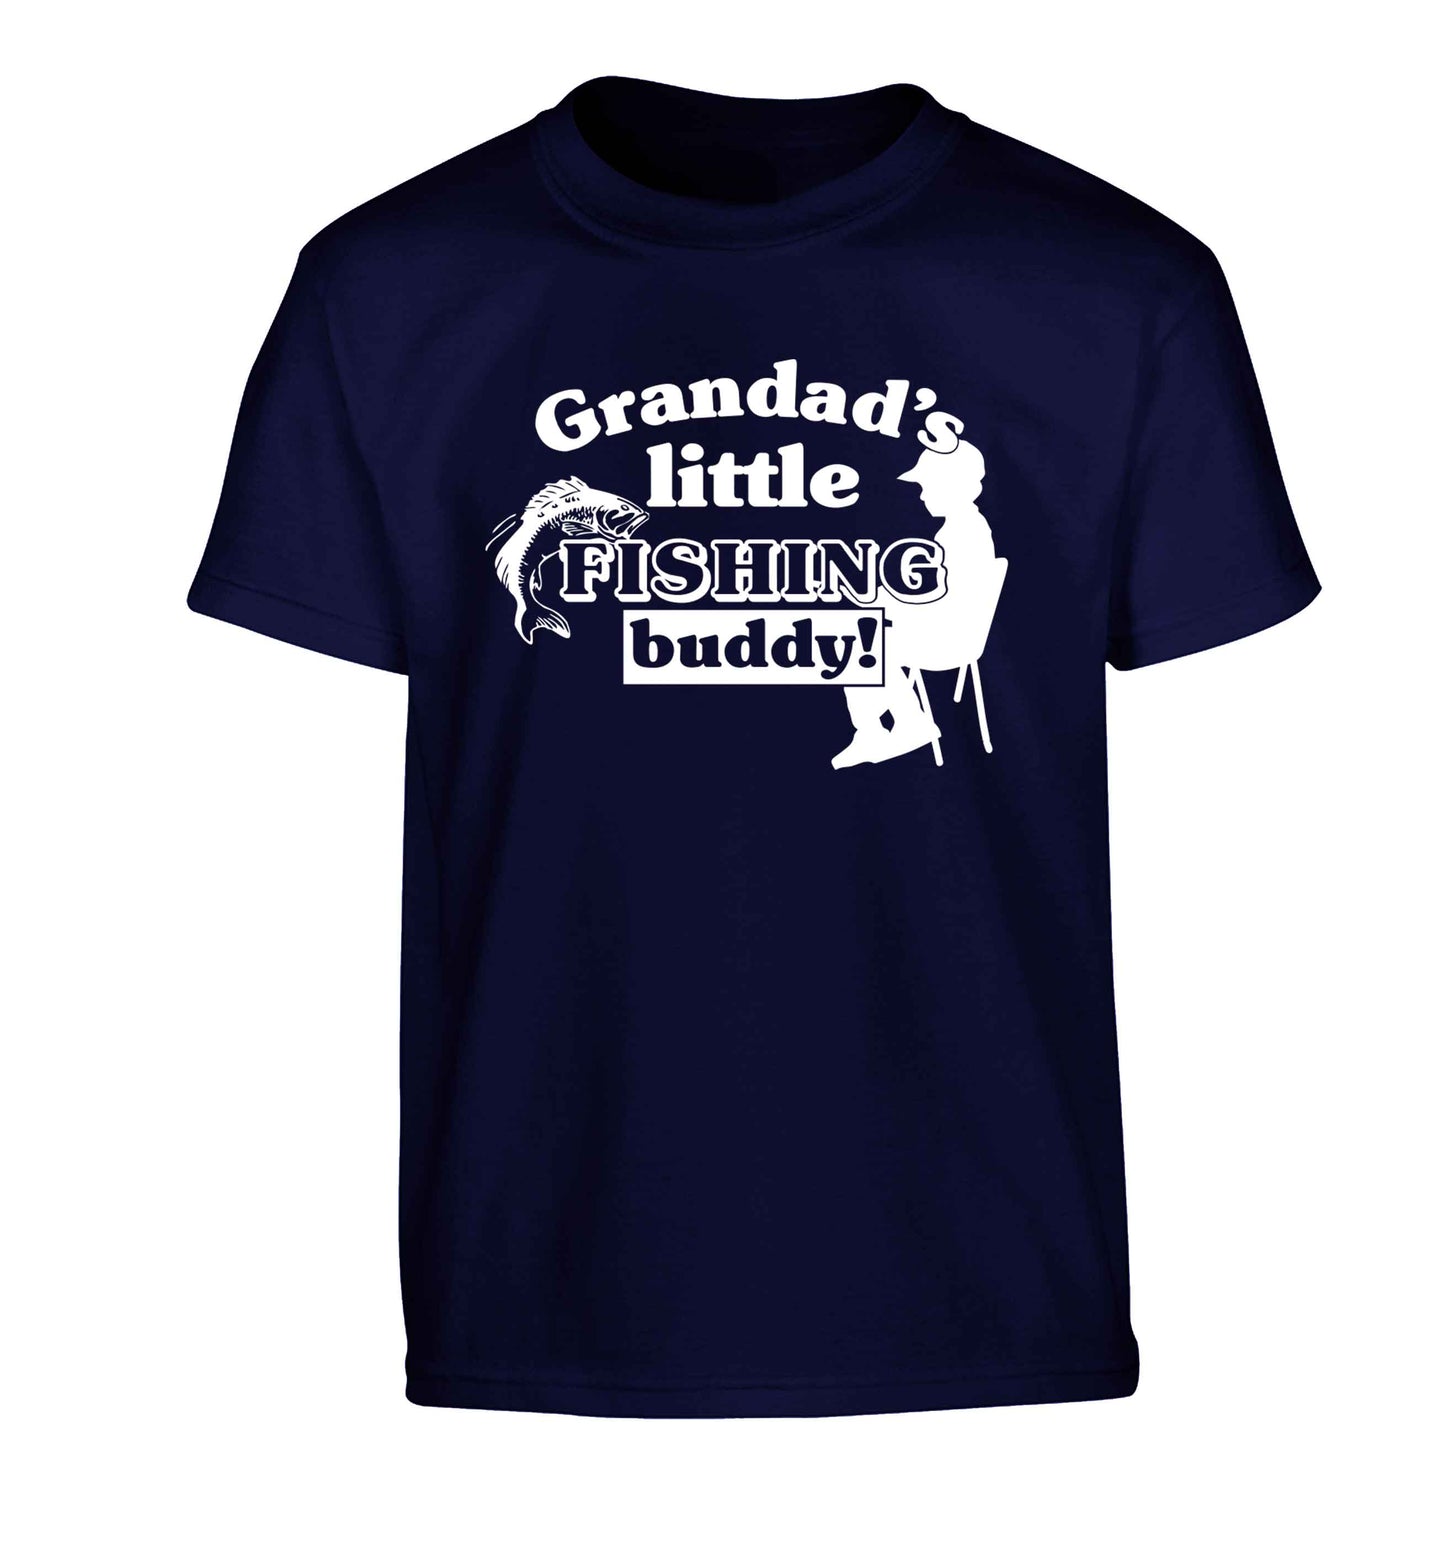 Grandad's little fishing buddy! Children's navy Tshirt 12-13 Years